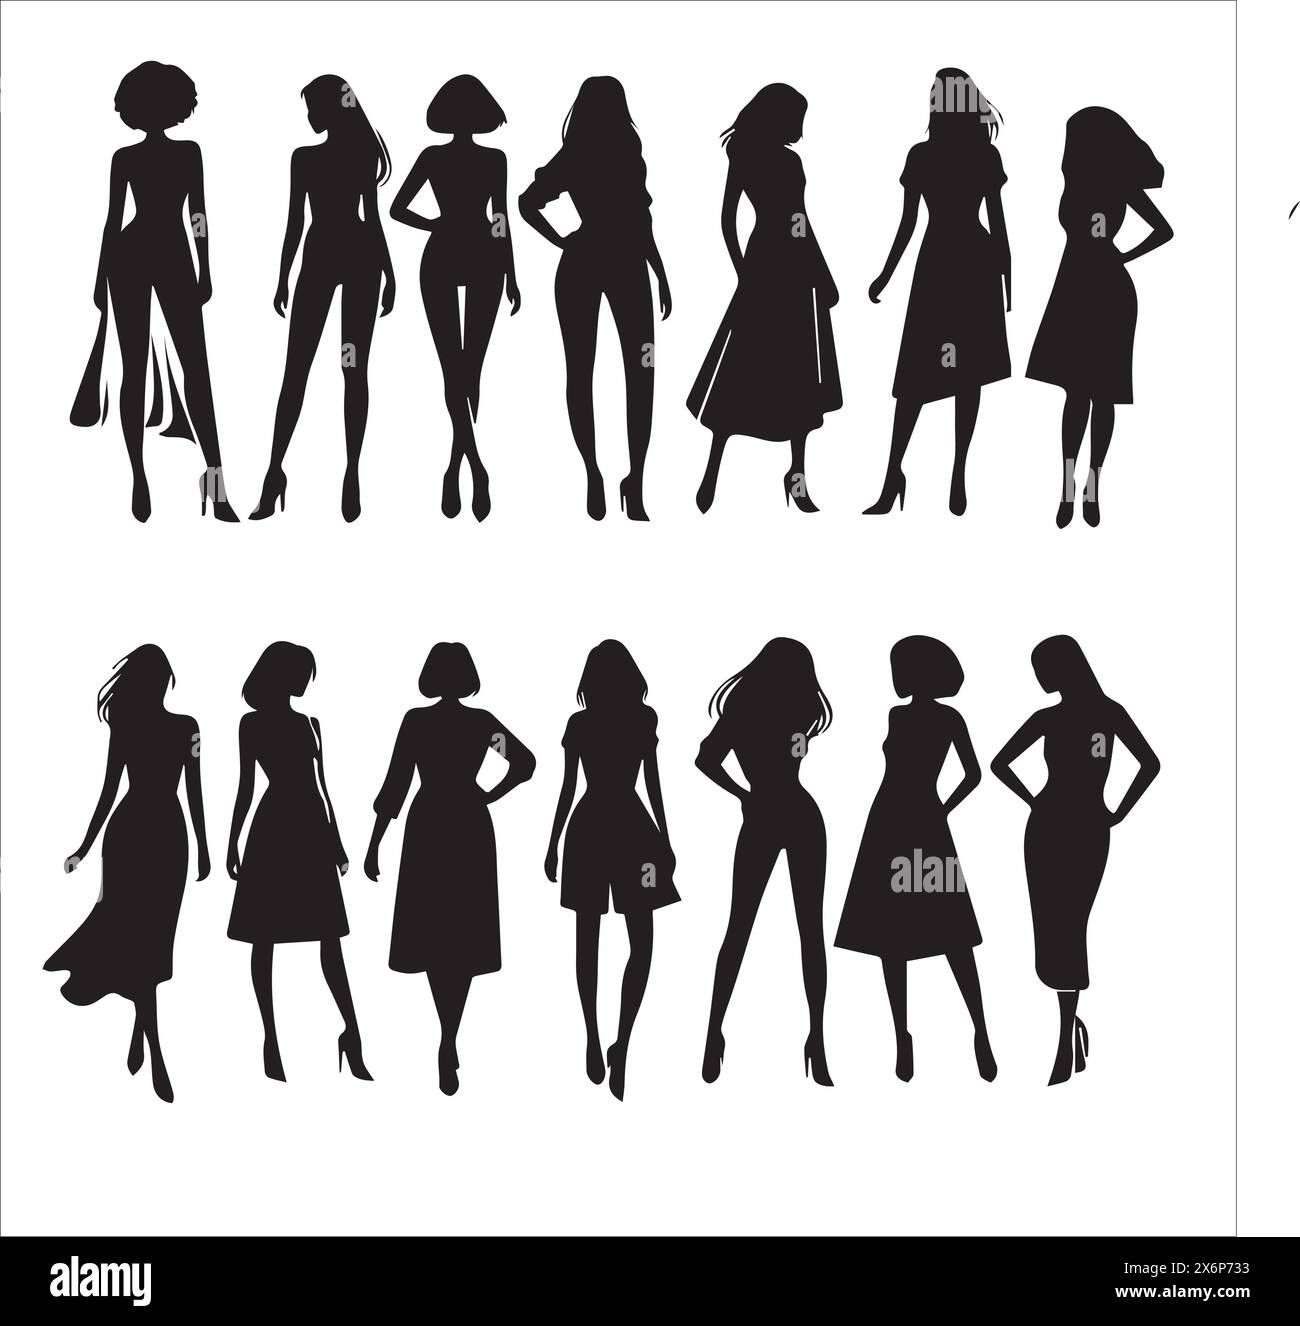 Diverse Silhouette Illustrations of Women: Artistic Expressions in verschiedenen Charakteren, Posen und Emotionen für kreative Projekte Stock Vektor